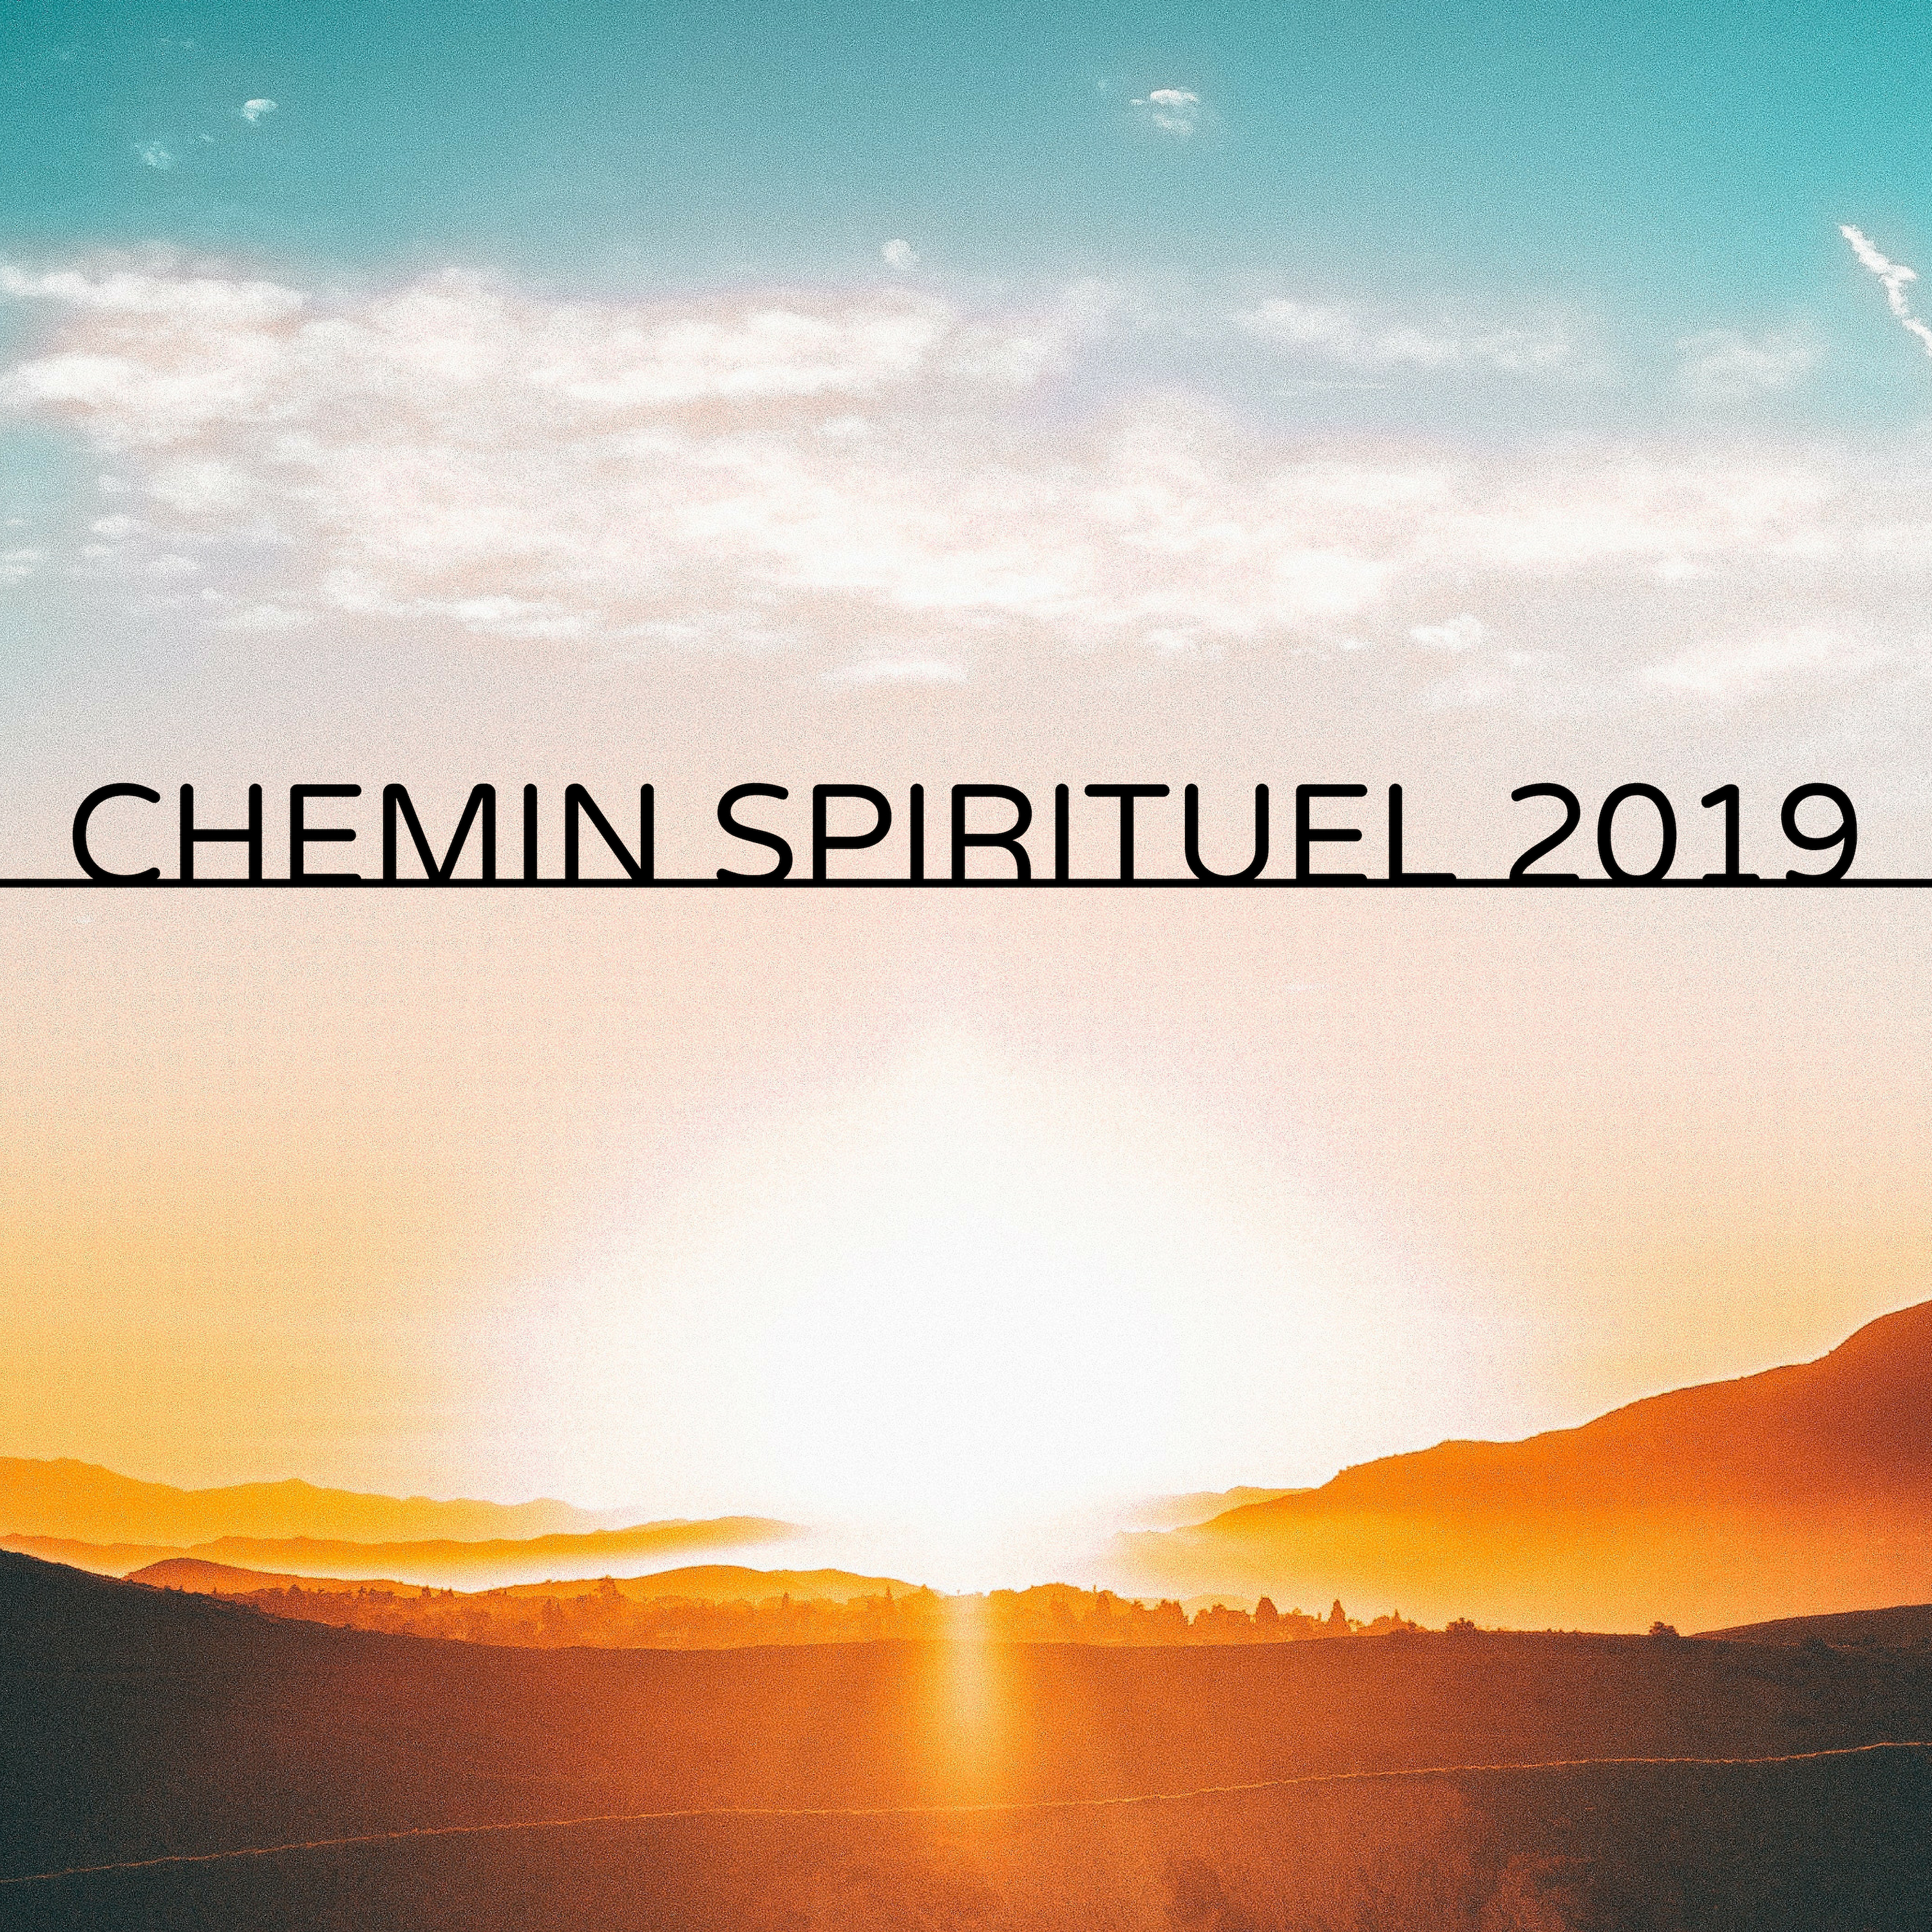 Chemin Spirituel 2019